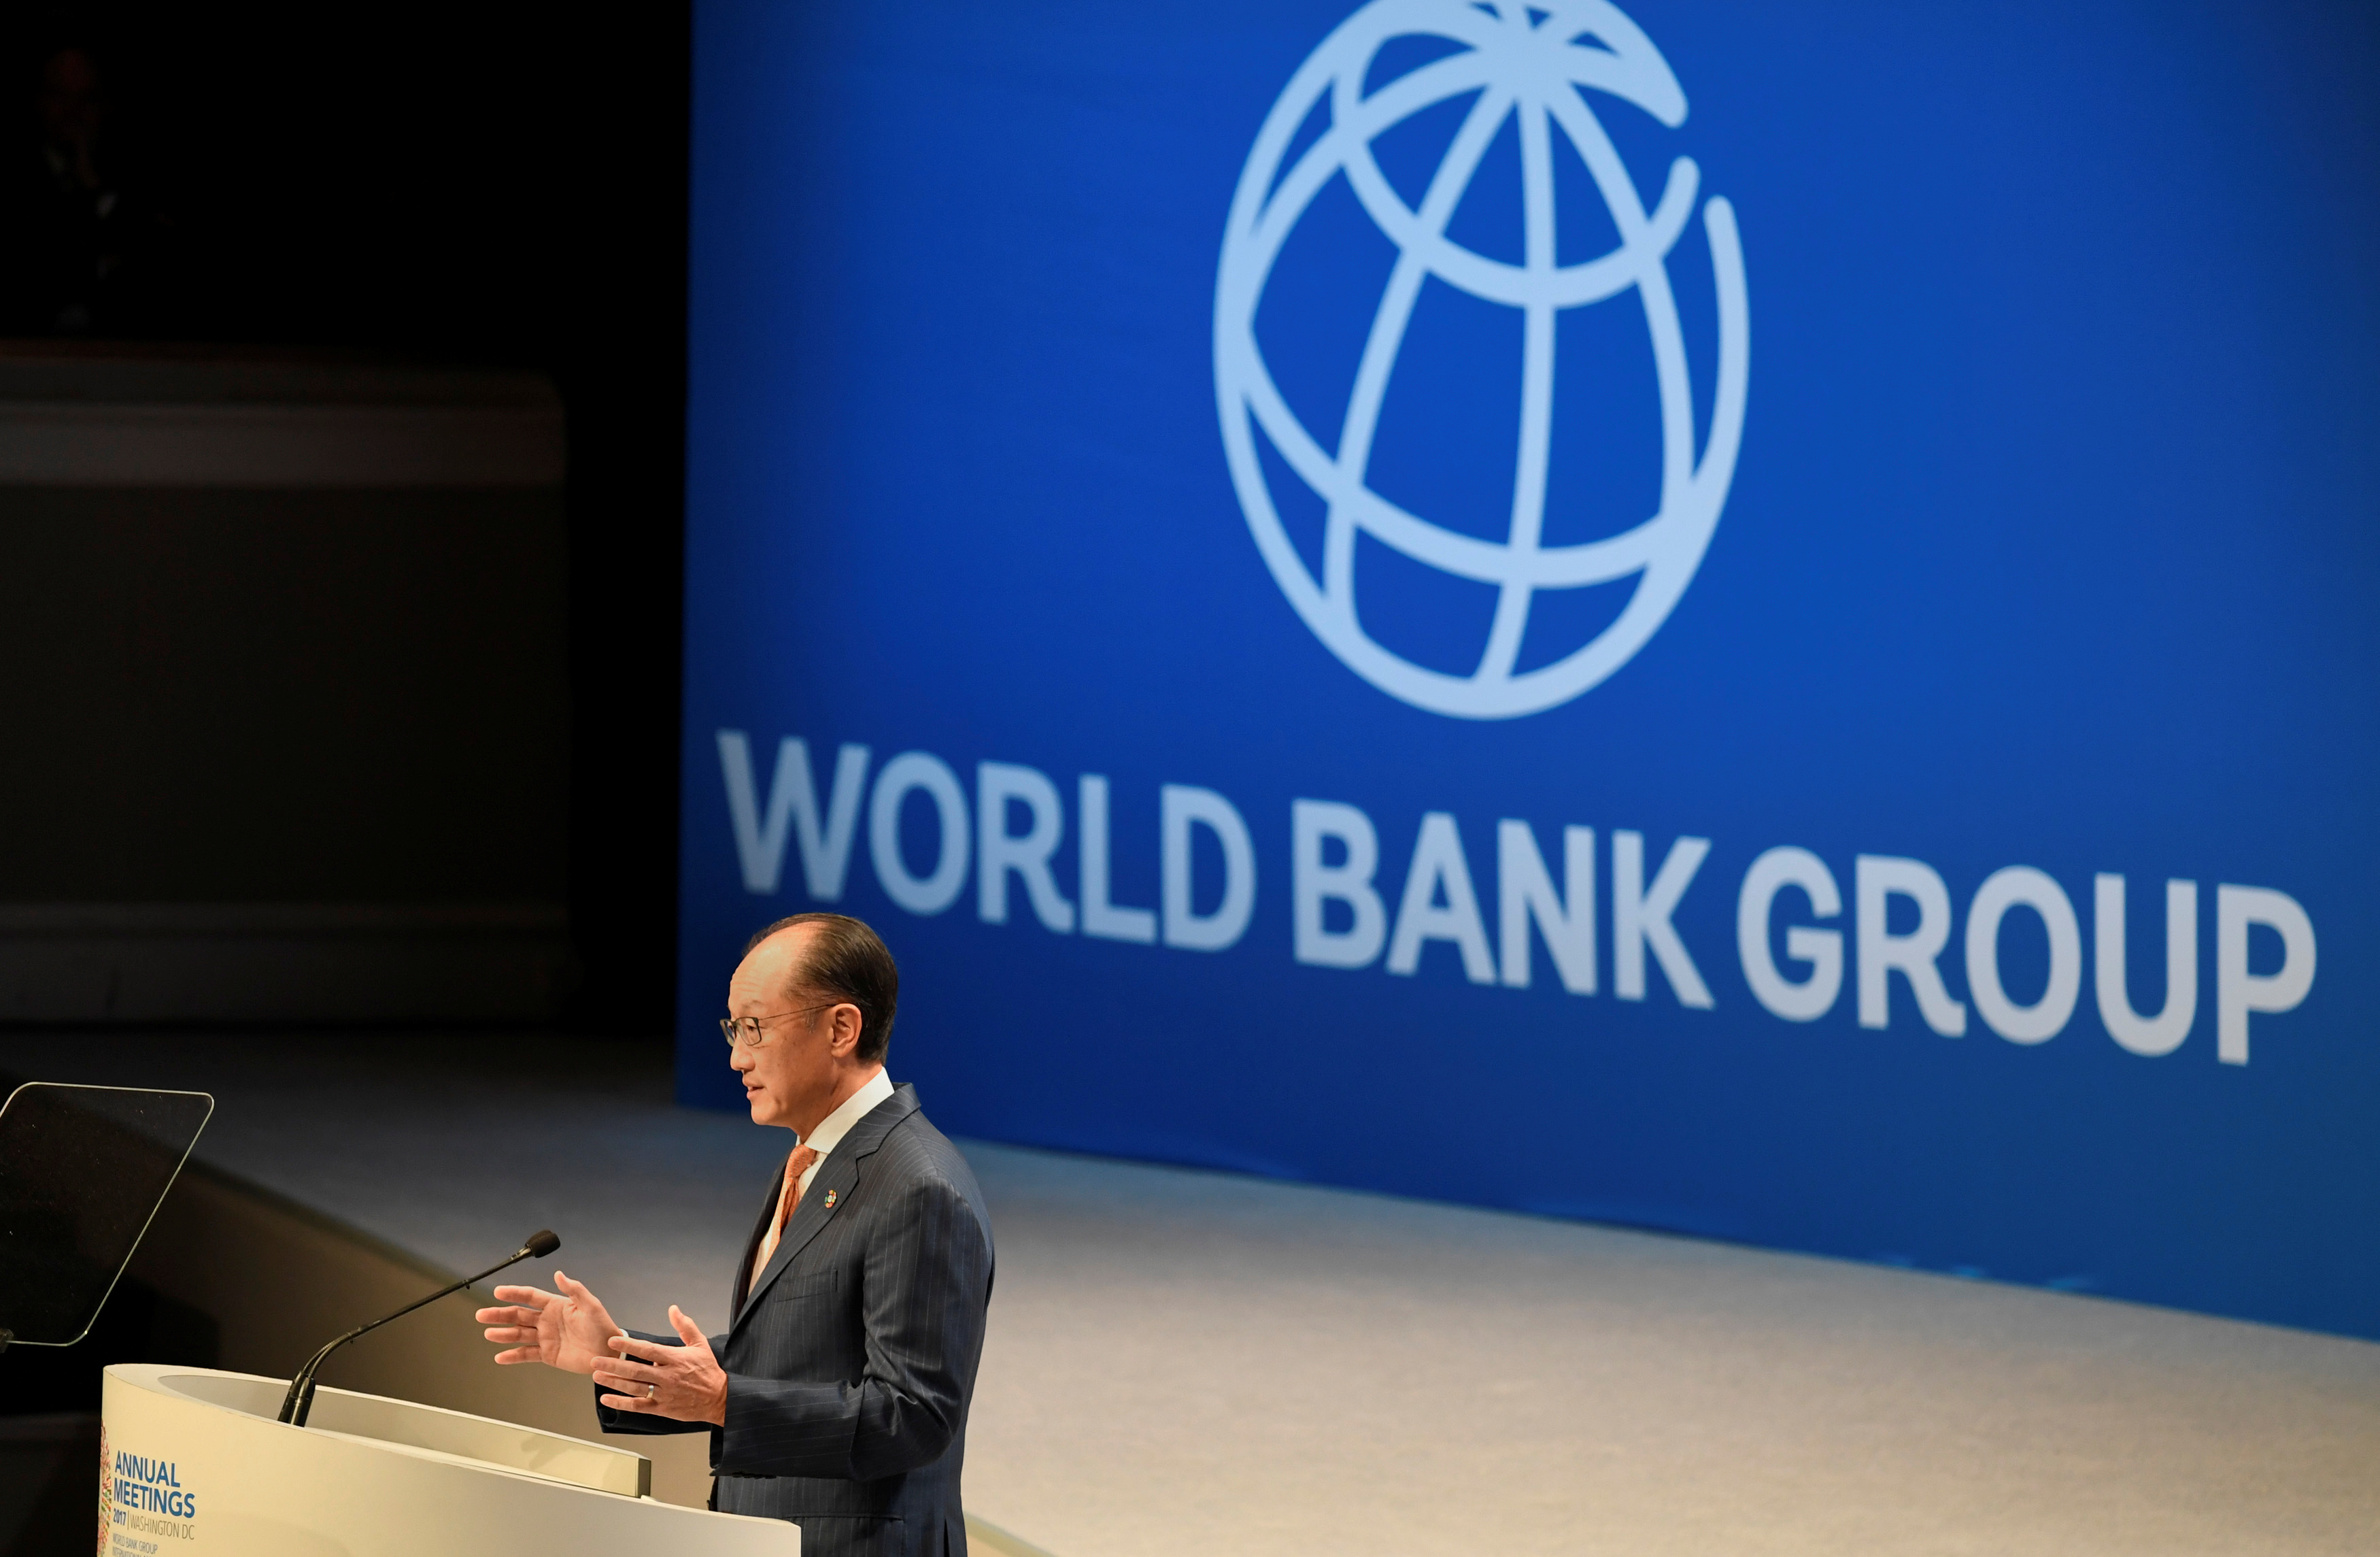 Всемирный банк деятельность. Всемирного банка (the World Bank). Всемирный банк флаг. Всемирный банк и Россия. Логотип Всемирного банка.